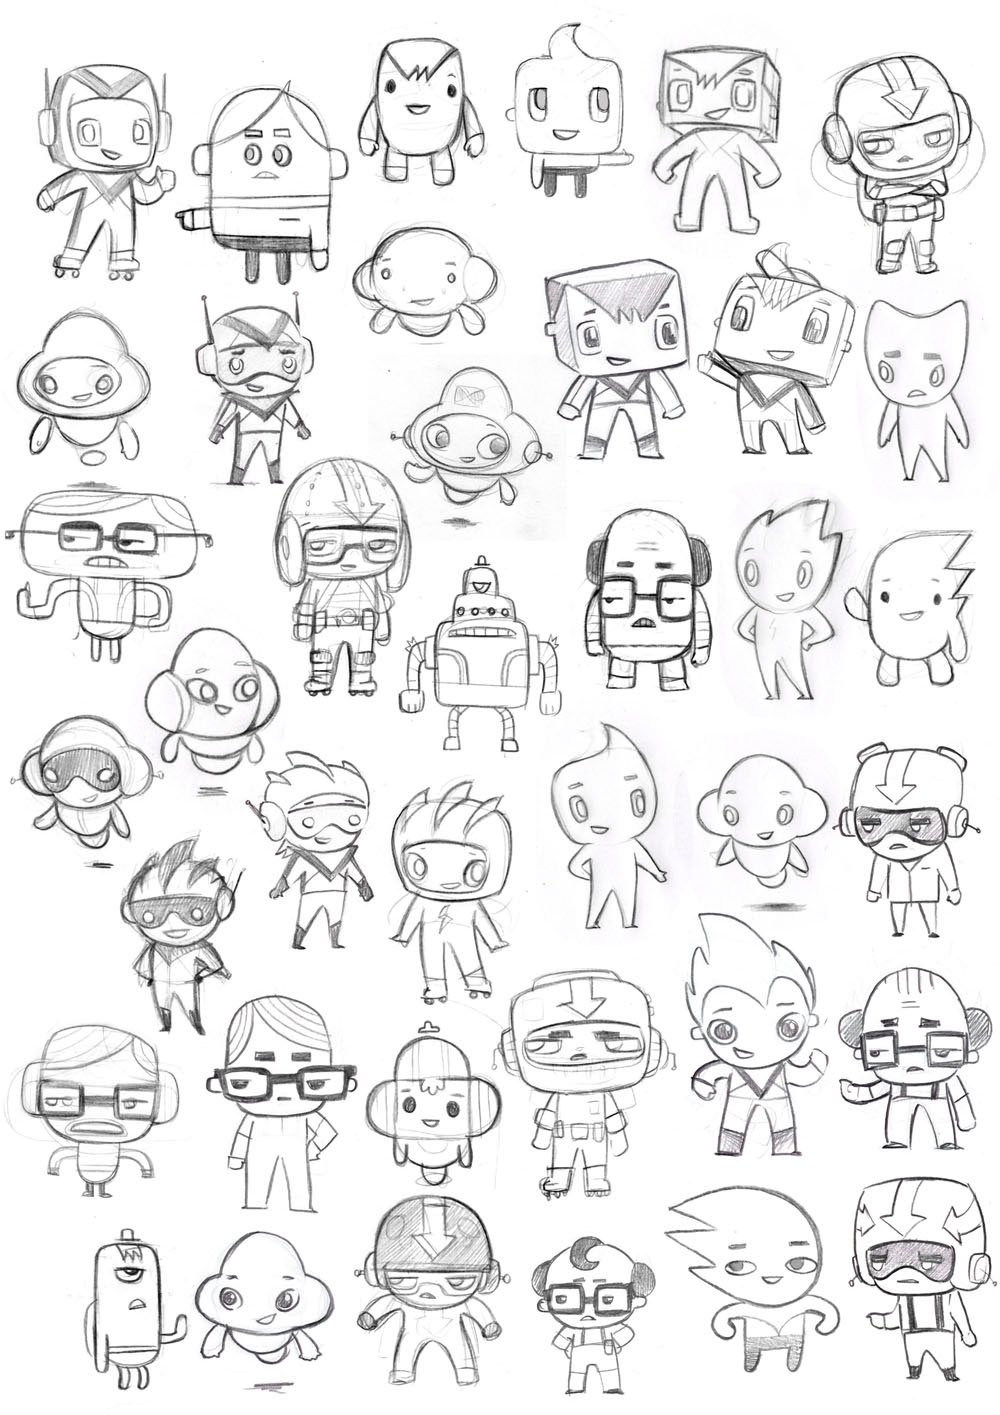 Cartoony  characters  cute vector